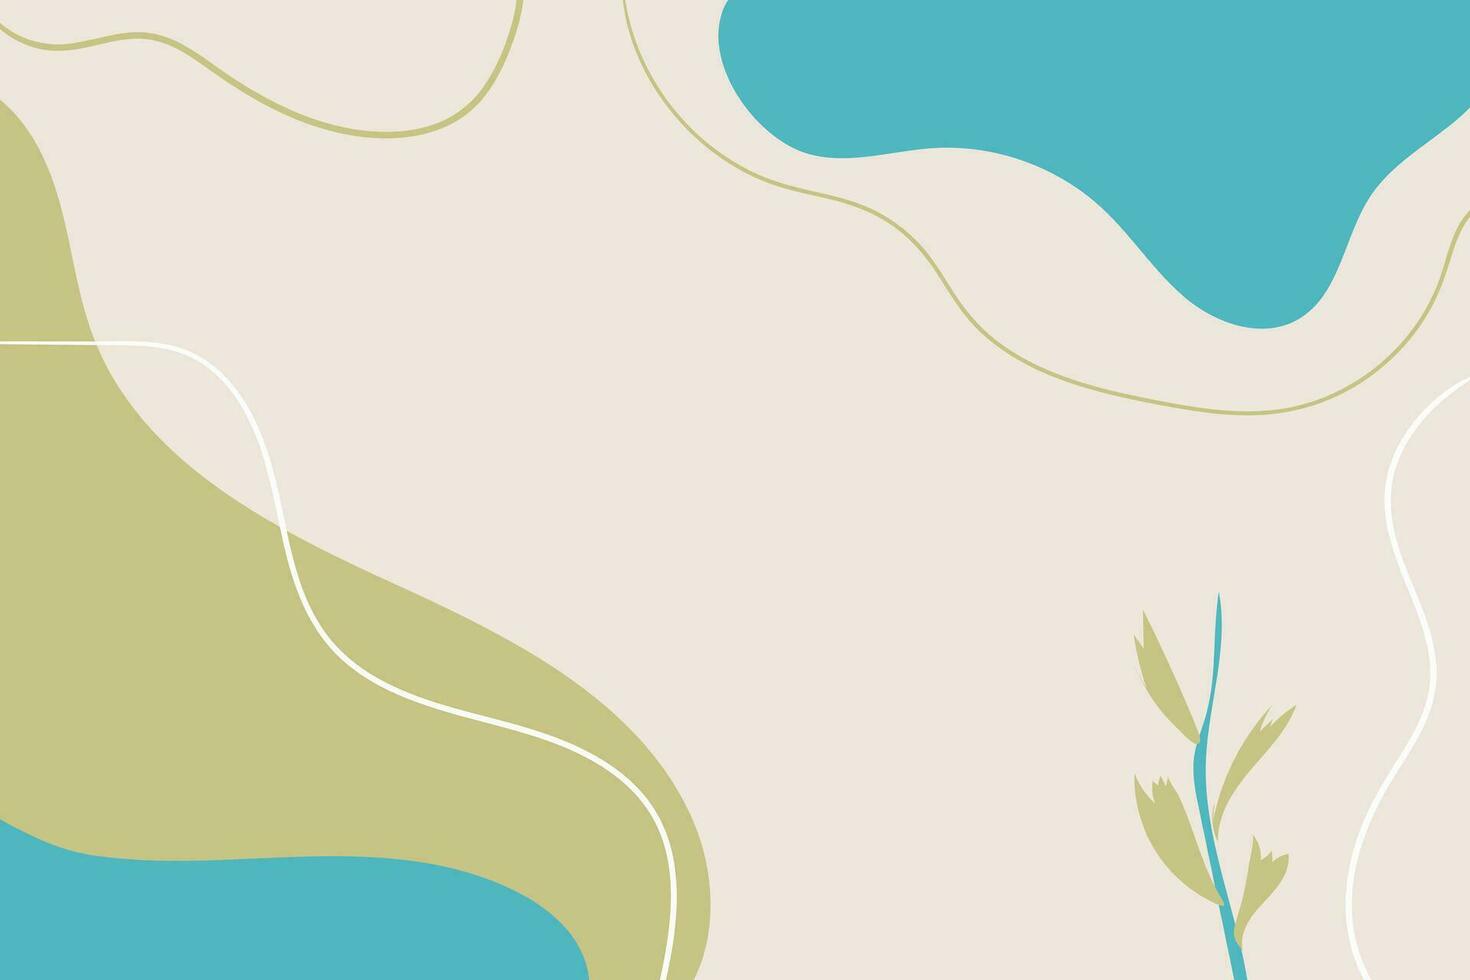 botanisch Banner mit organisch Formen, Blätter, Ast und Pflanzen. Hand gezeichnet abstrakt Hintergrund. Hand gezeichnet verschiedene Formen und Gekritzel Objekte. zeitgenössisch modern modisch Illustration vektor